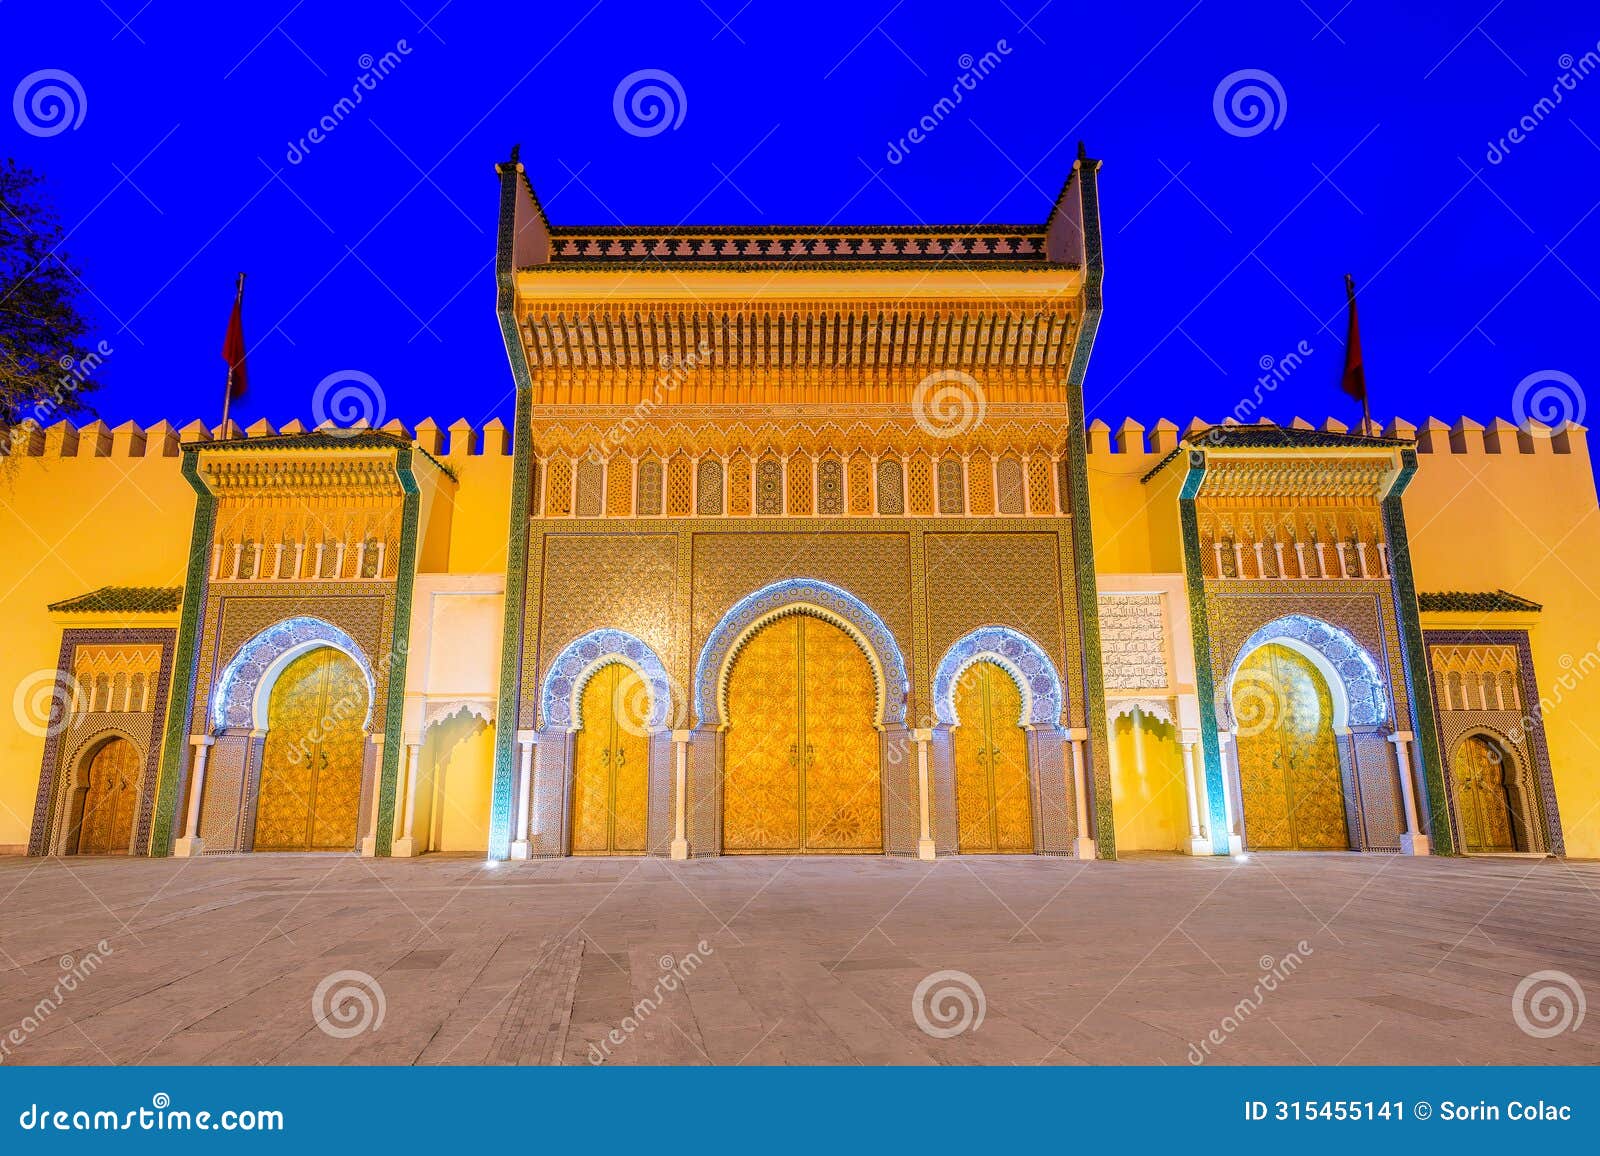 fez or fes, morocco. alawi royal palace.